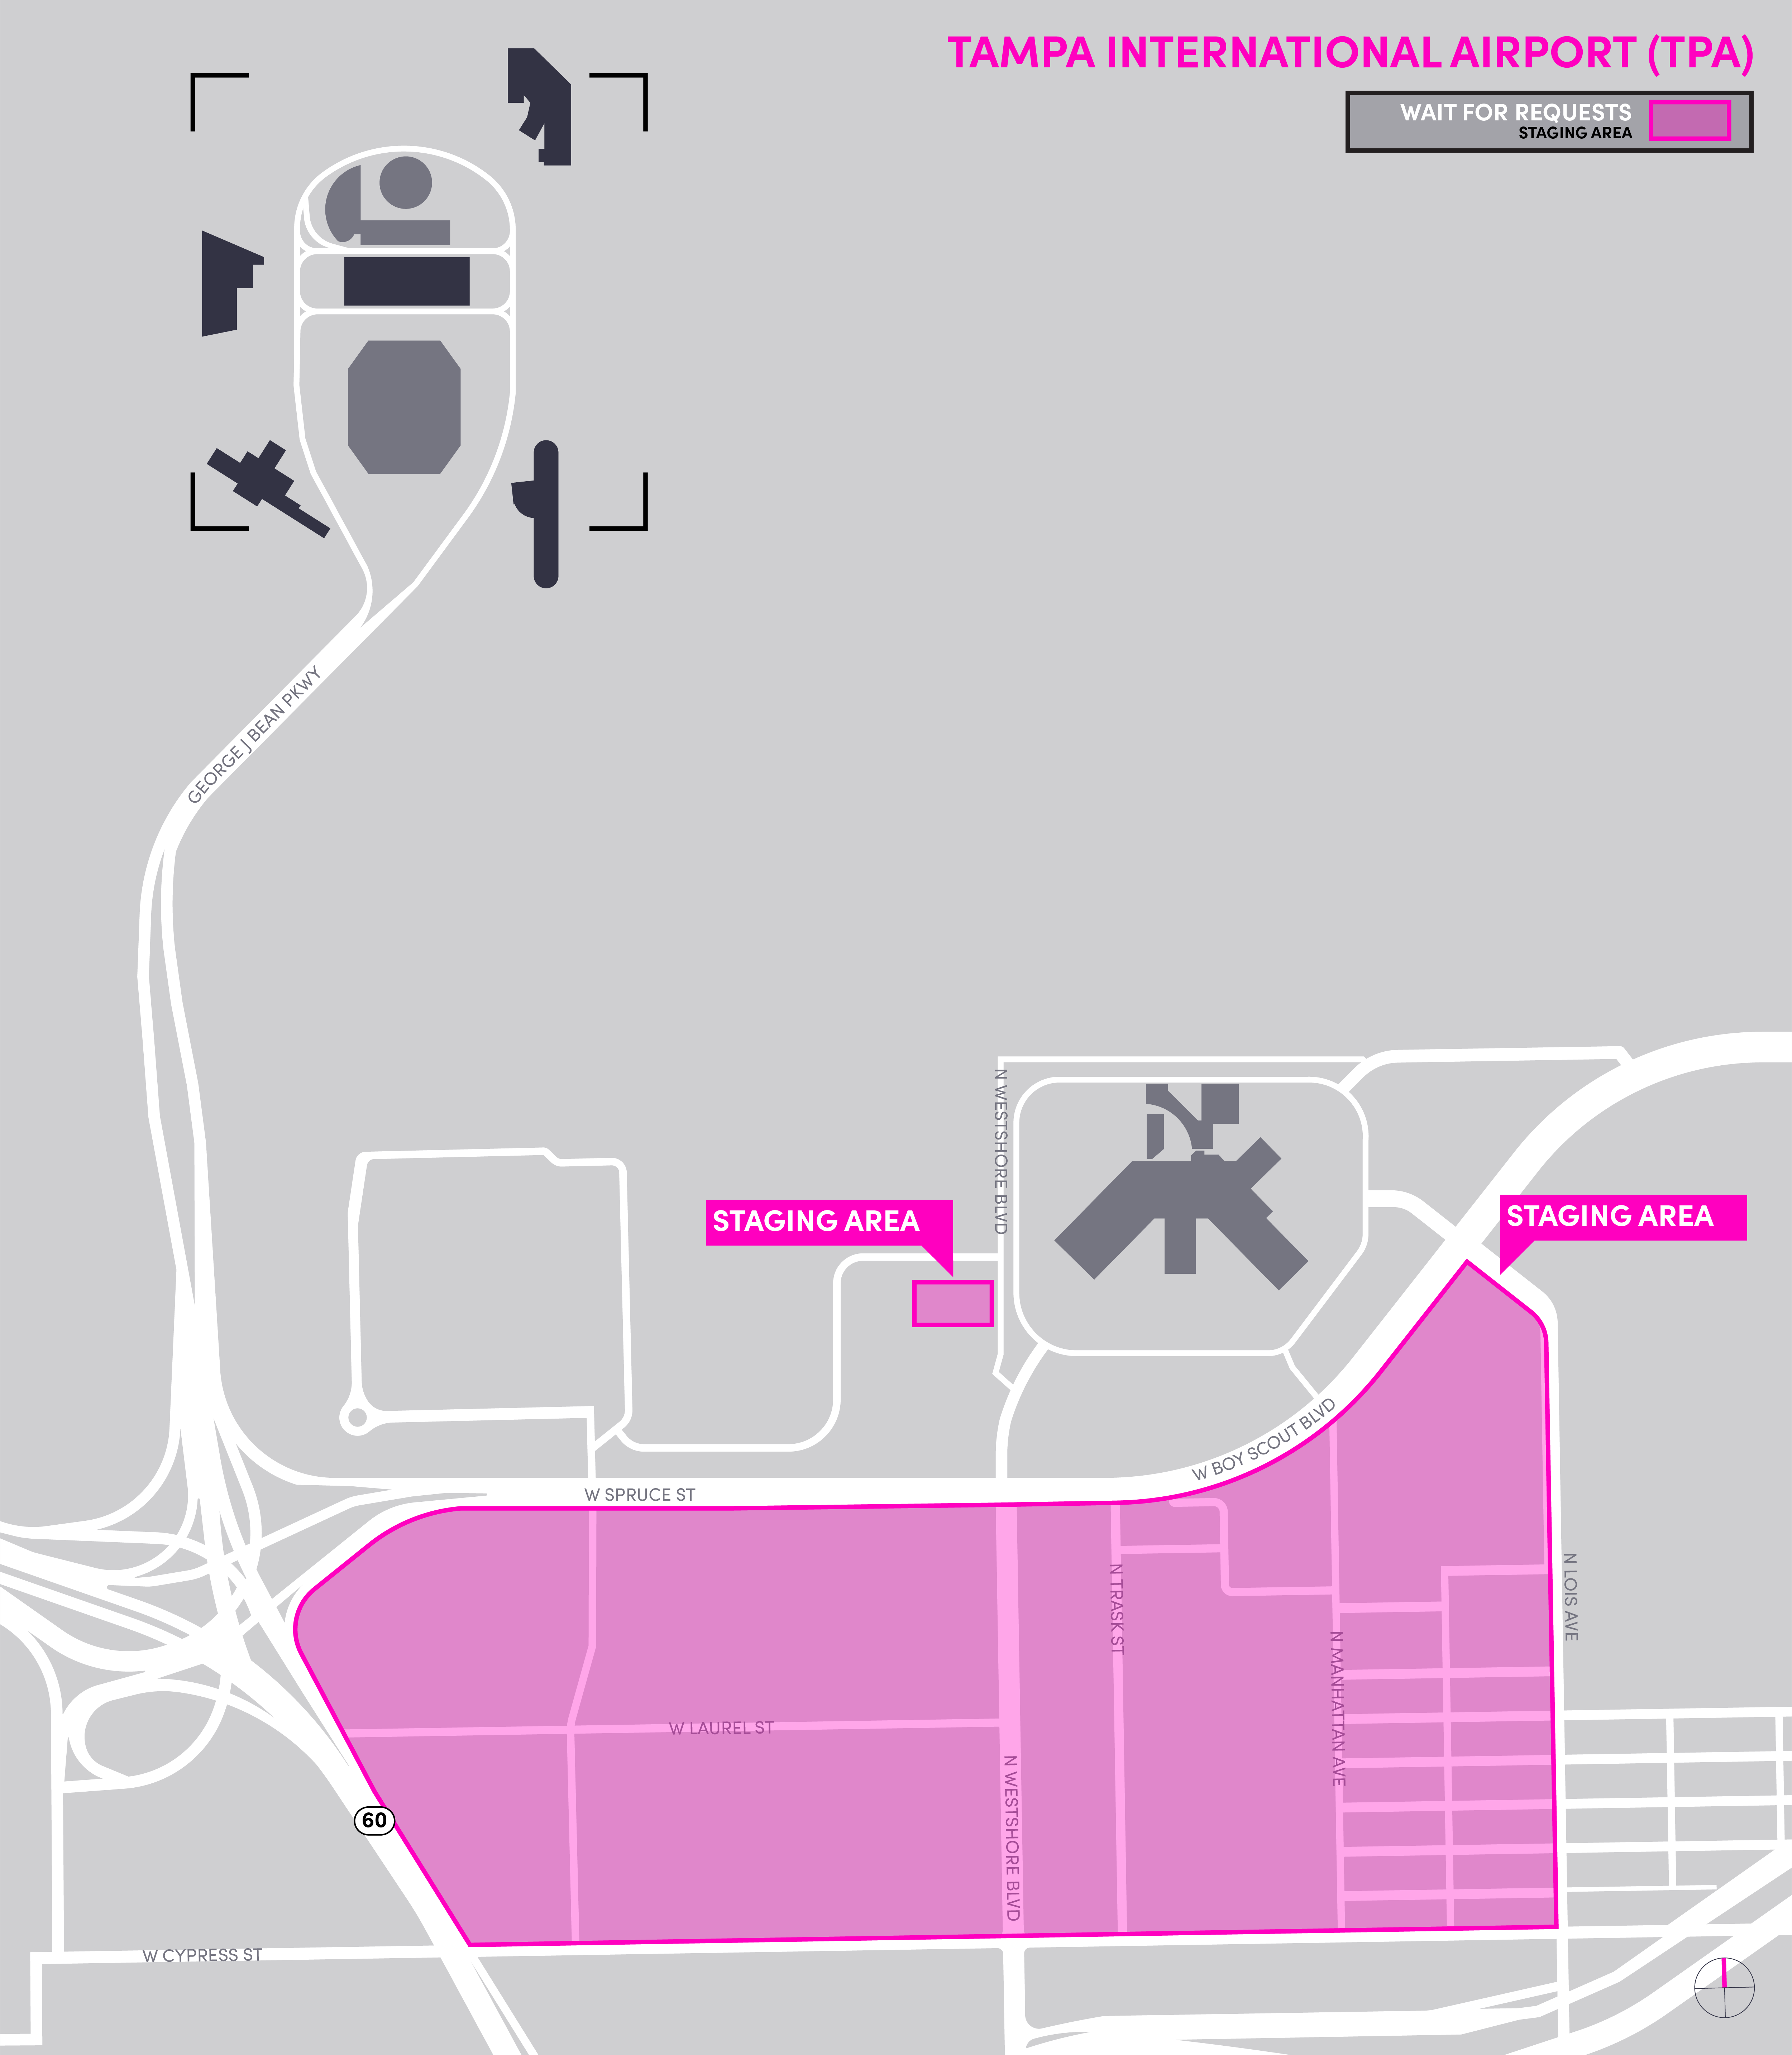 Cette image est une carte de l'aéroport TPA incluant la zone d'attente. Elle comprend les zones d'attente, de départ et d'arrivée.